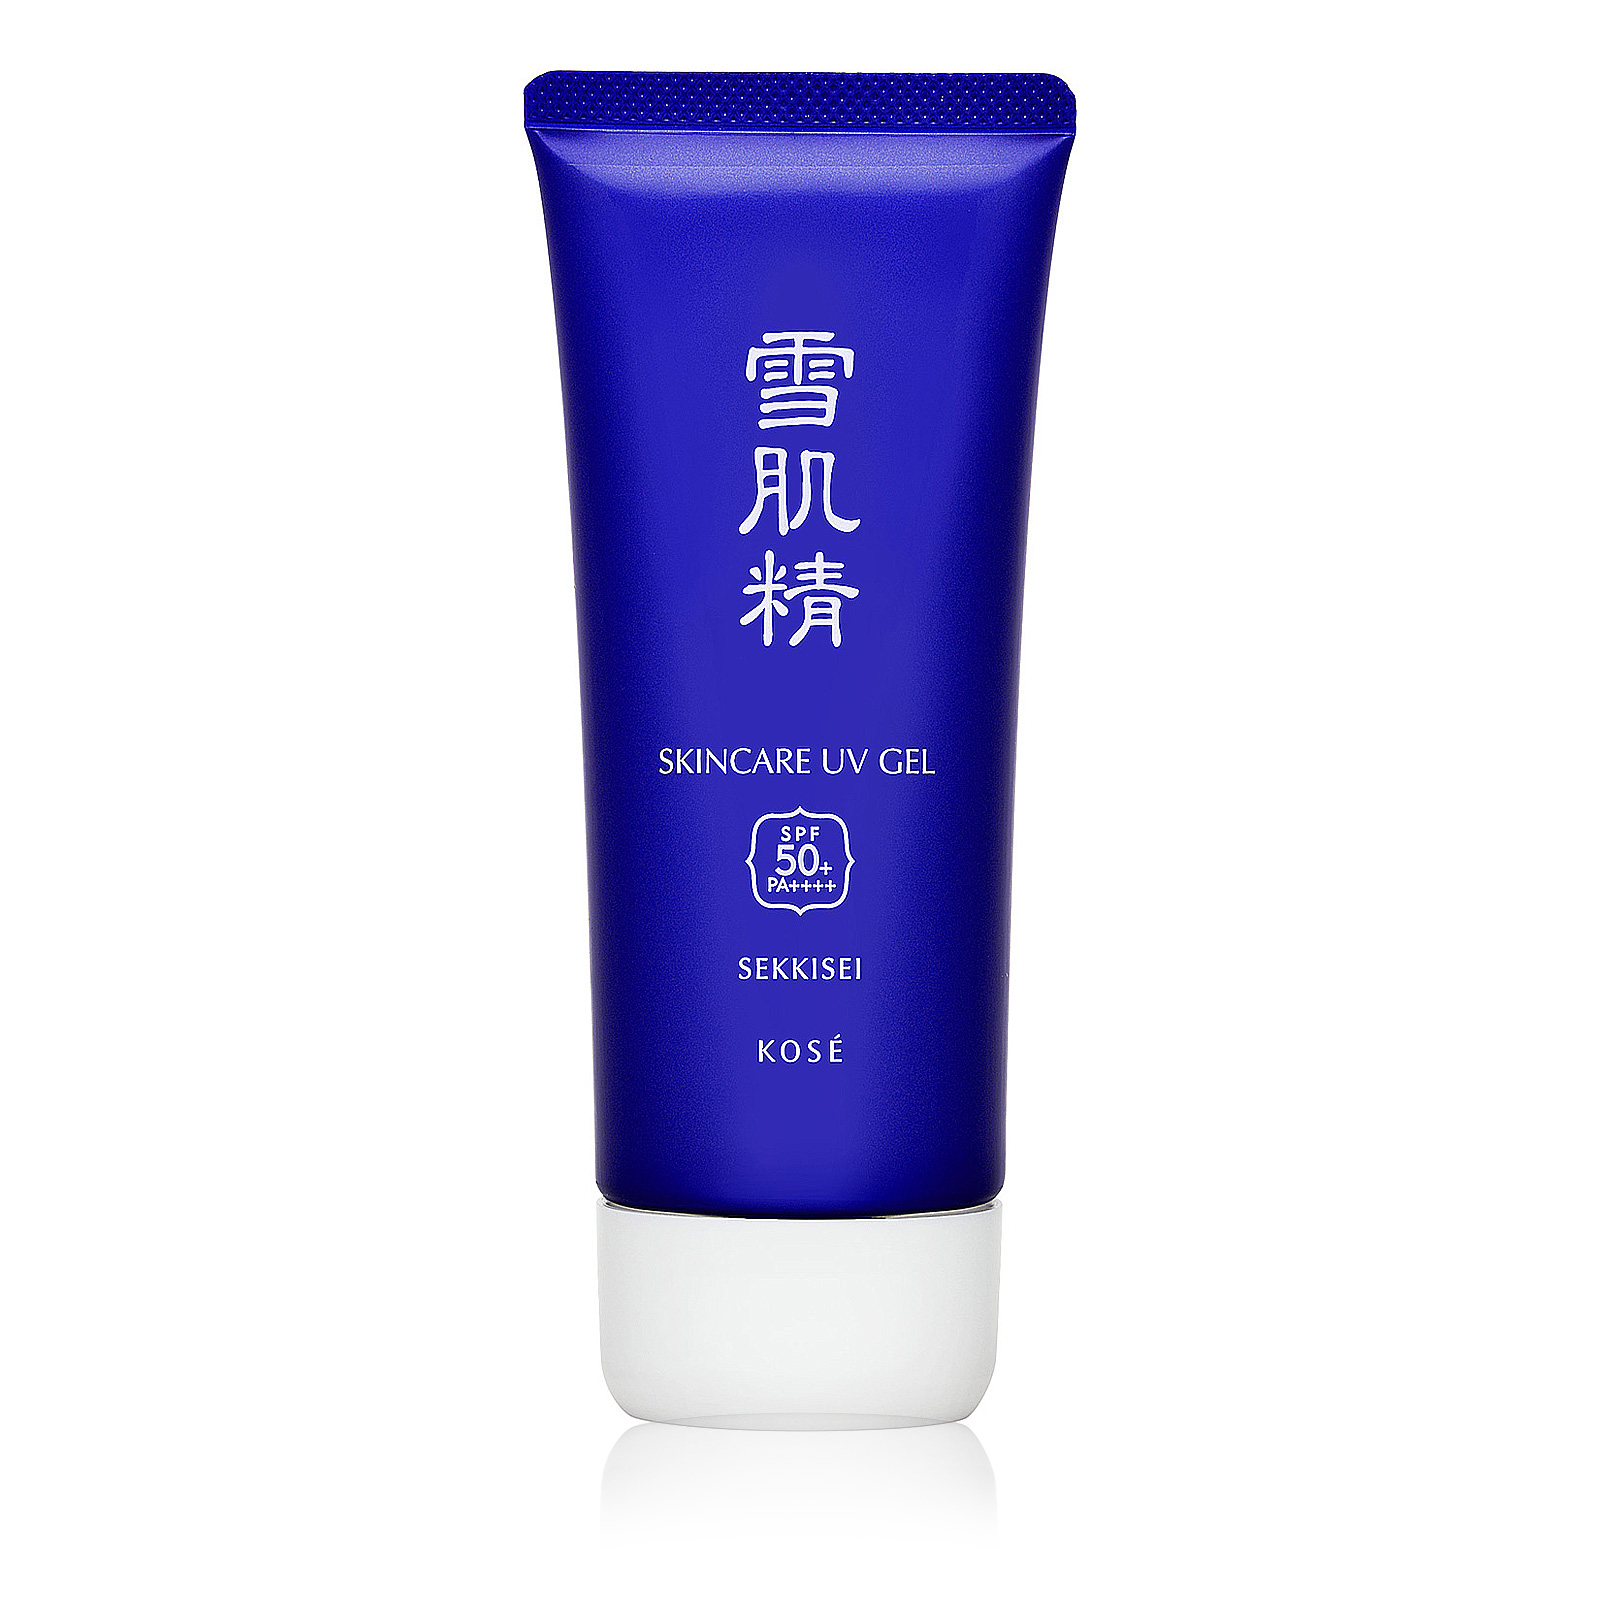 Sekkisei Skincare UV Gel SPF50+ PA++++